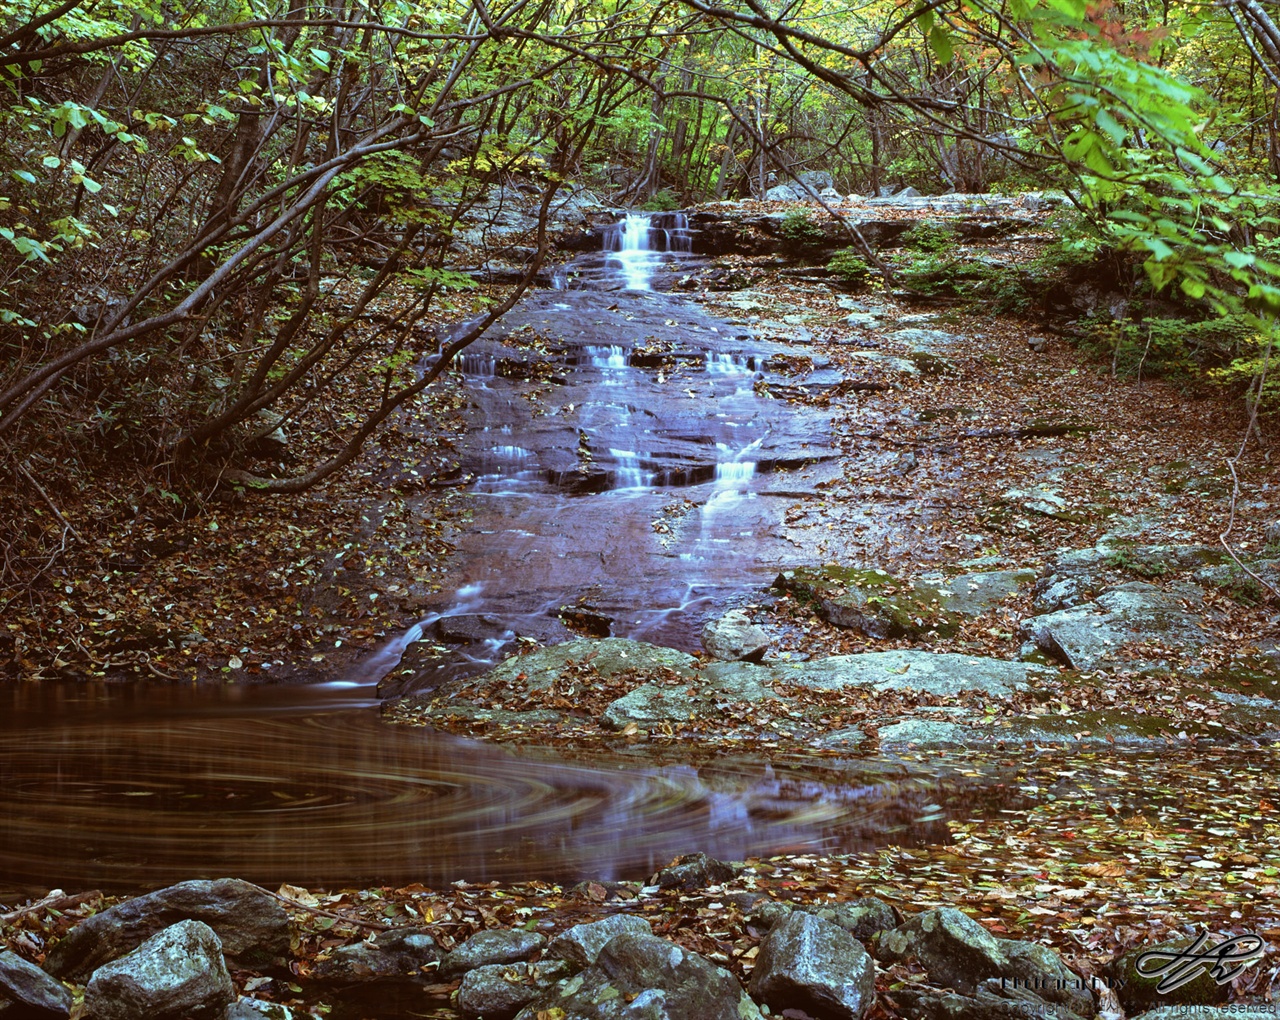 (Velvia50)1분간 노출을 주어 물의 흐름을 담았다. 낙엽이 물과 함께 휘돌아 내려갔다.